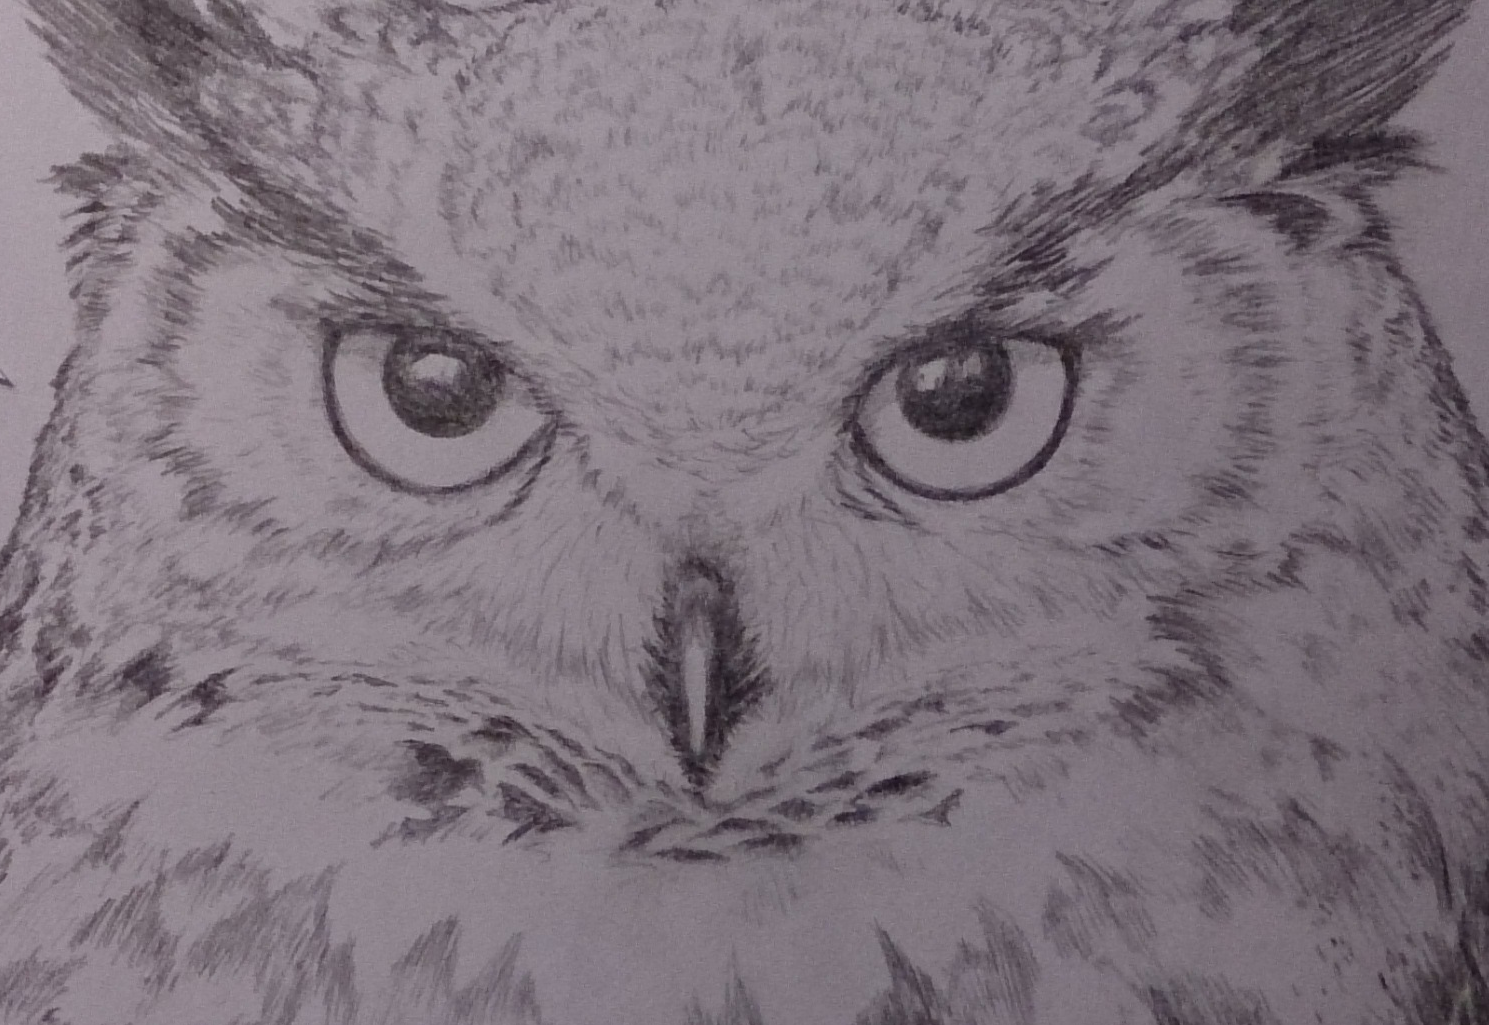 Simple owl drawing | Owls drawing, Owl drawing simple, Bird drawings